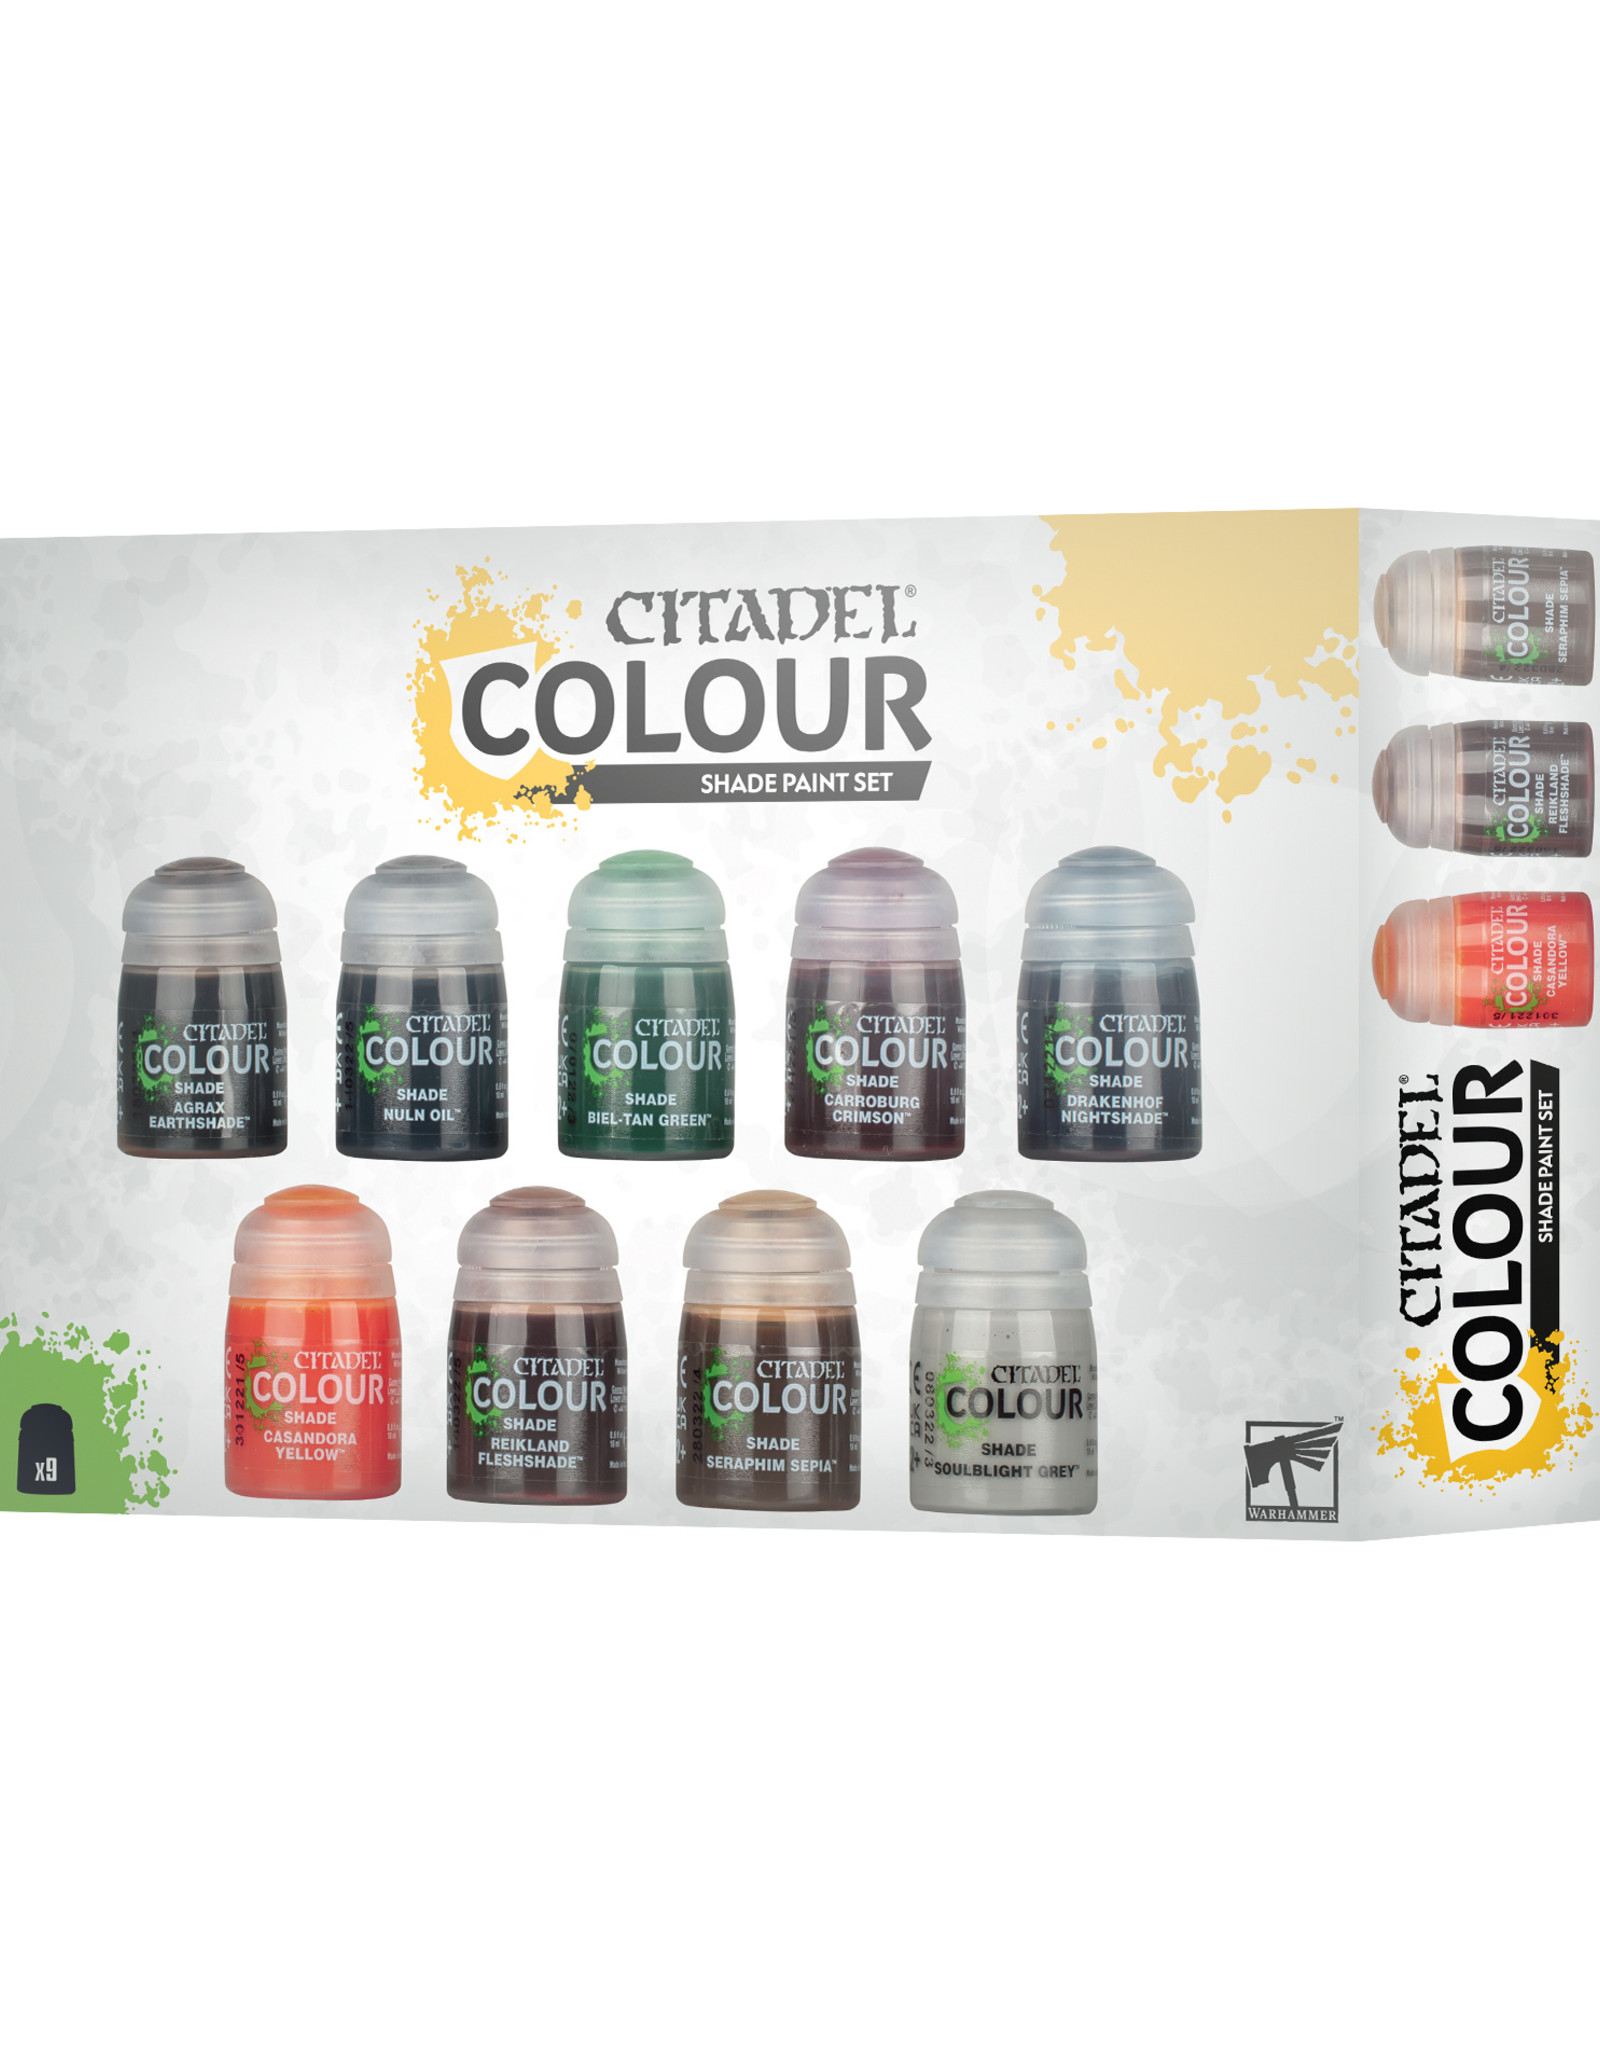 Citadel (Games Workshop) Citadel Colour: Shade Paint Set